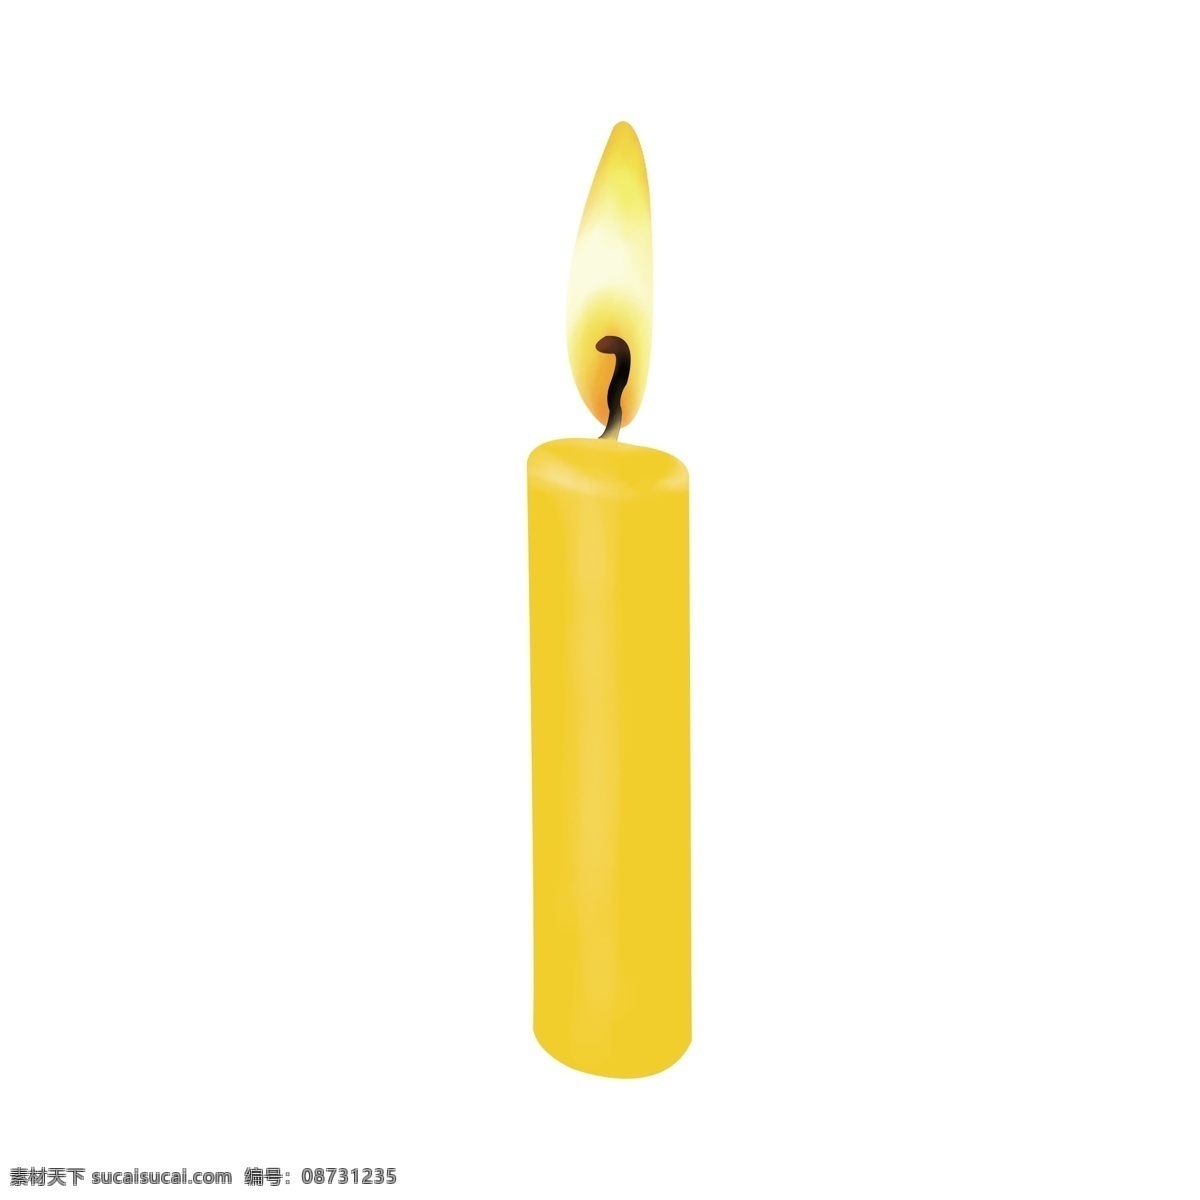 简约 黄色 祈福 蜡烛 gif 元素 节日元素